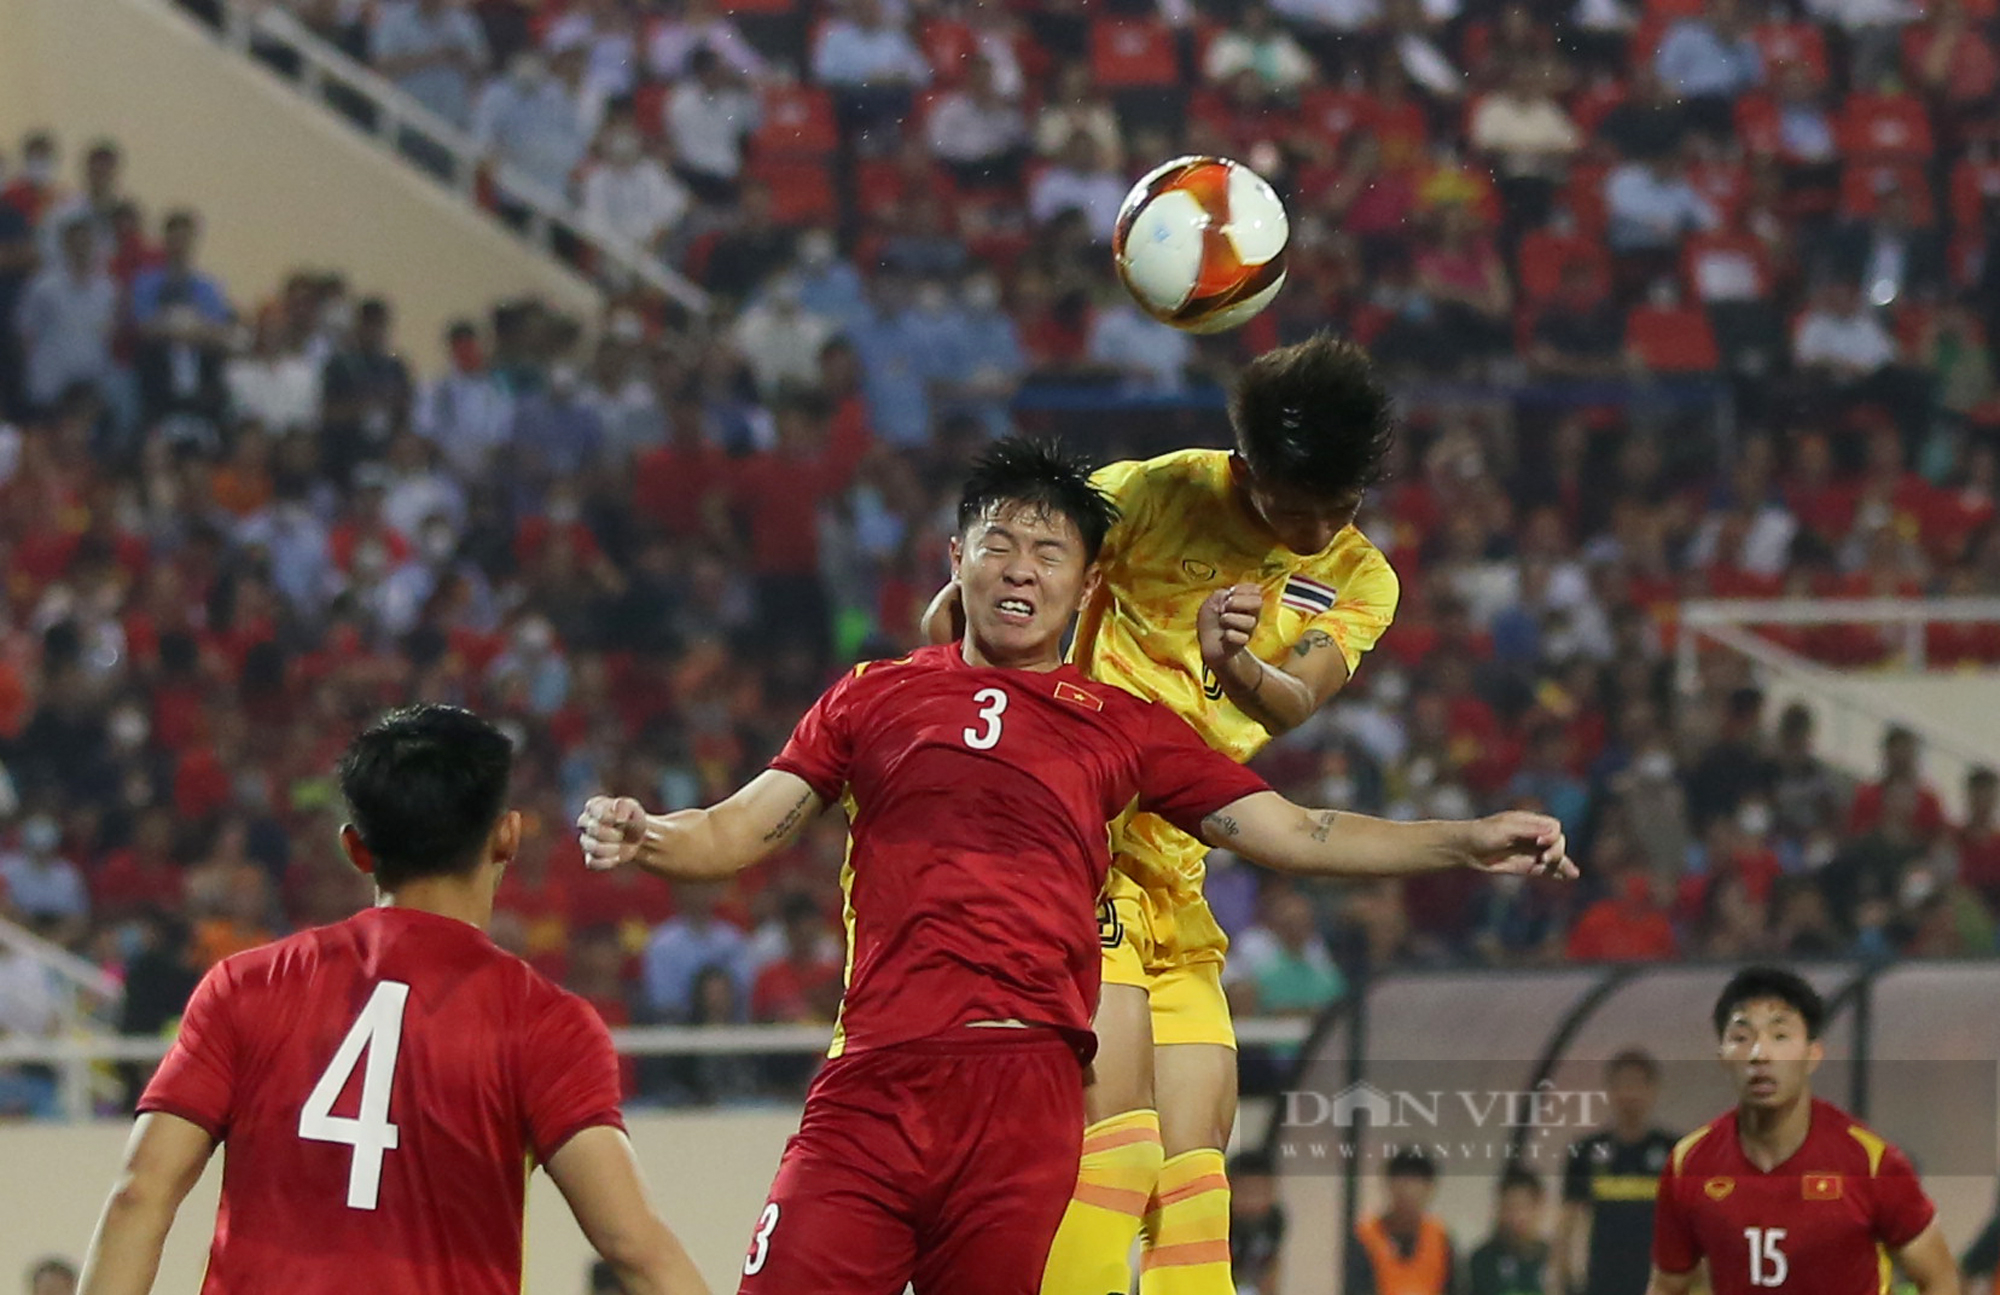 Cầu thủ U23 Thái Lan gục xuống sân, ông Polking lặng lẽ động viên sau trận thua Việt Nam - Ảnh 3.